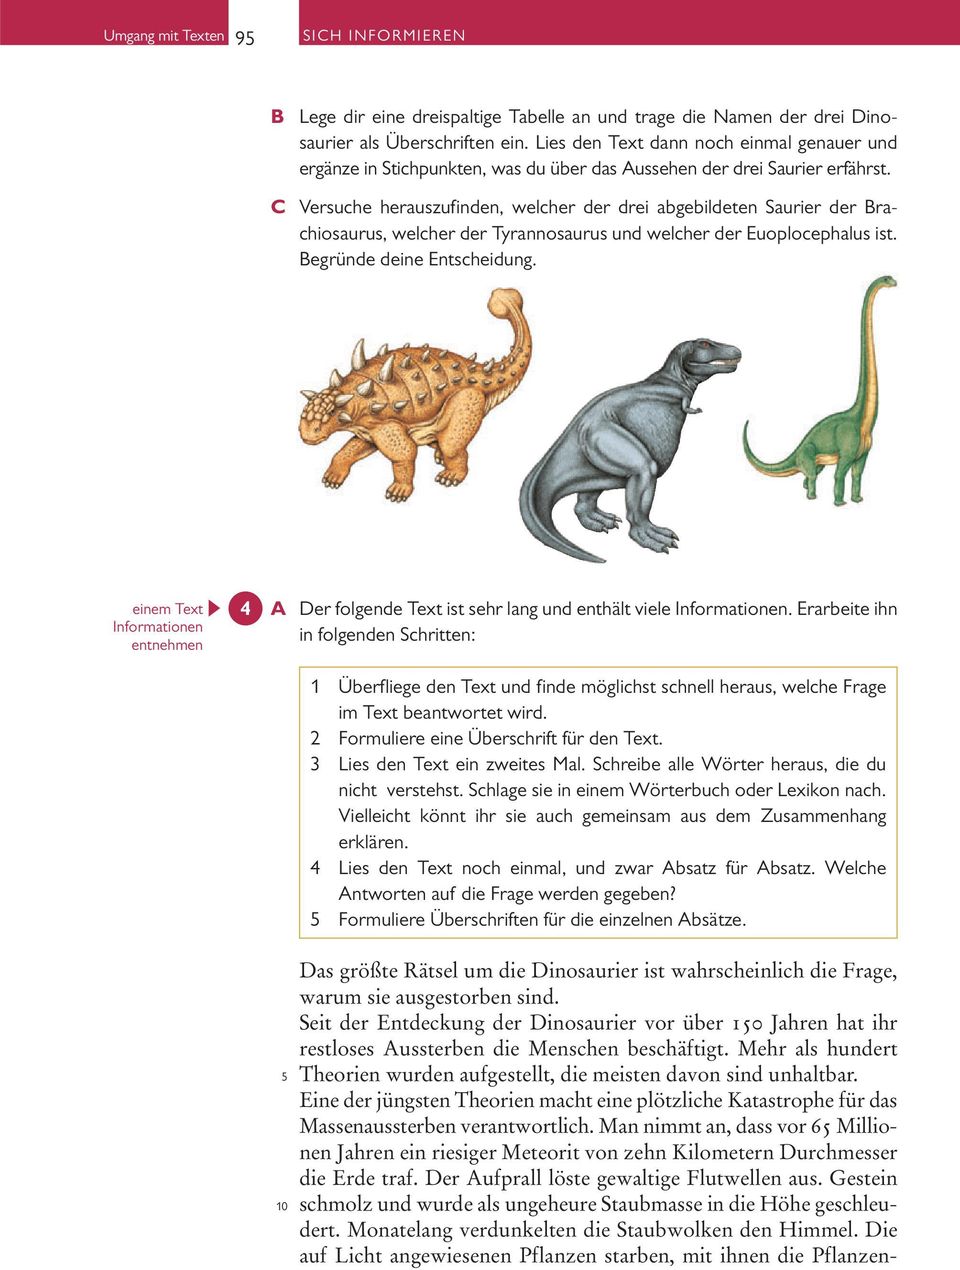 C Versuche herauszufinden, welcher der drei abgebildeten Saurier der rachiosaurus, welcher der Tyrannosaurus und welcher der Euoplocephalus ist. egründe deine Entscheidung.